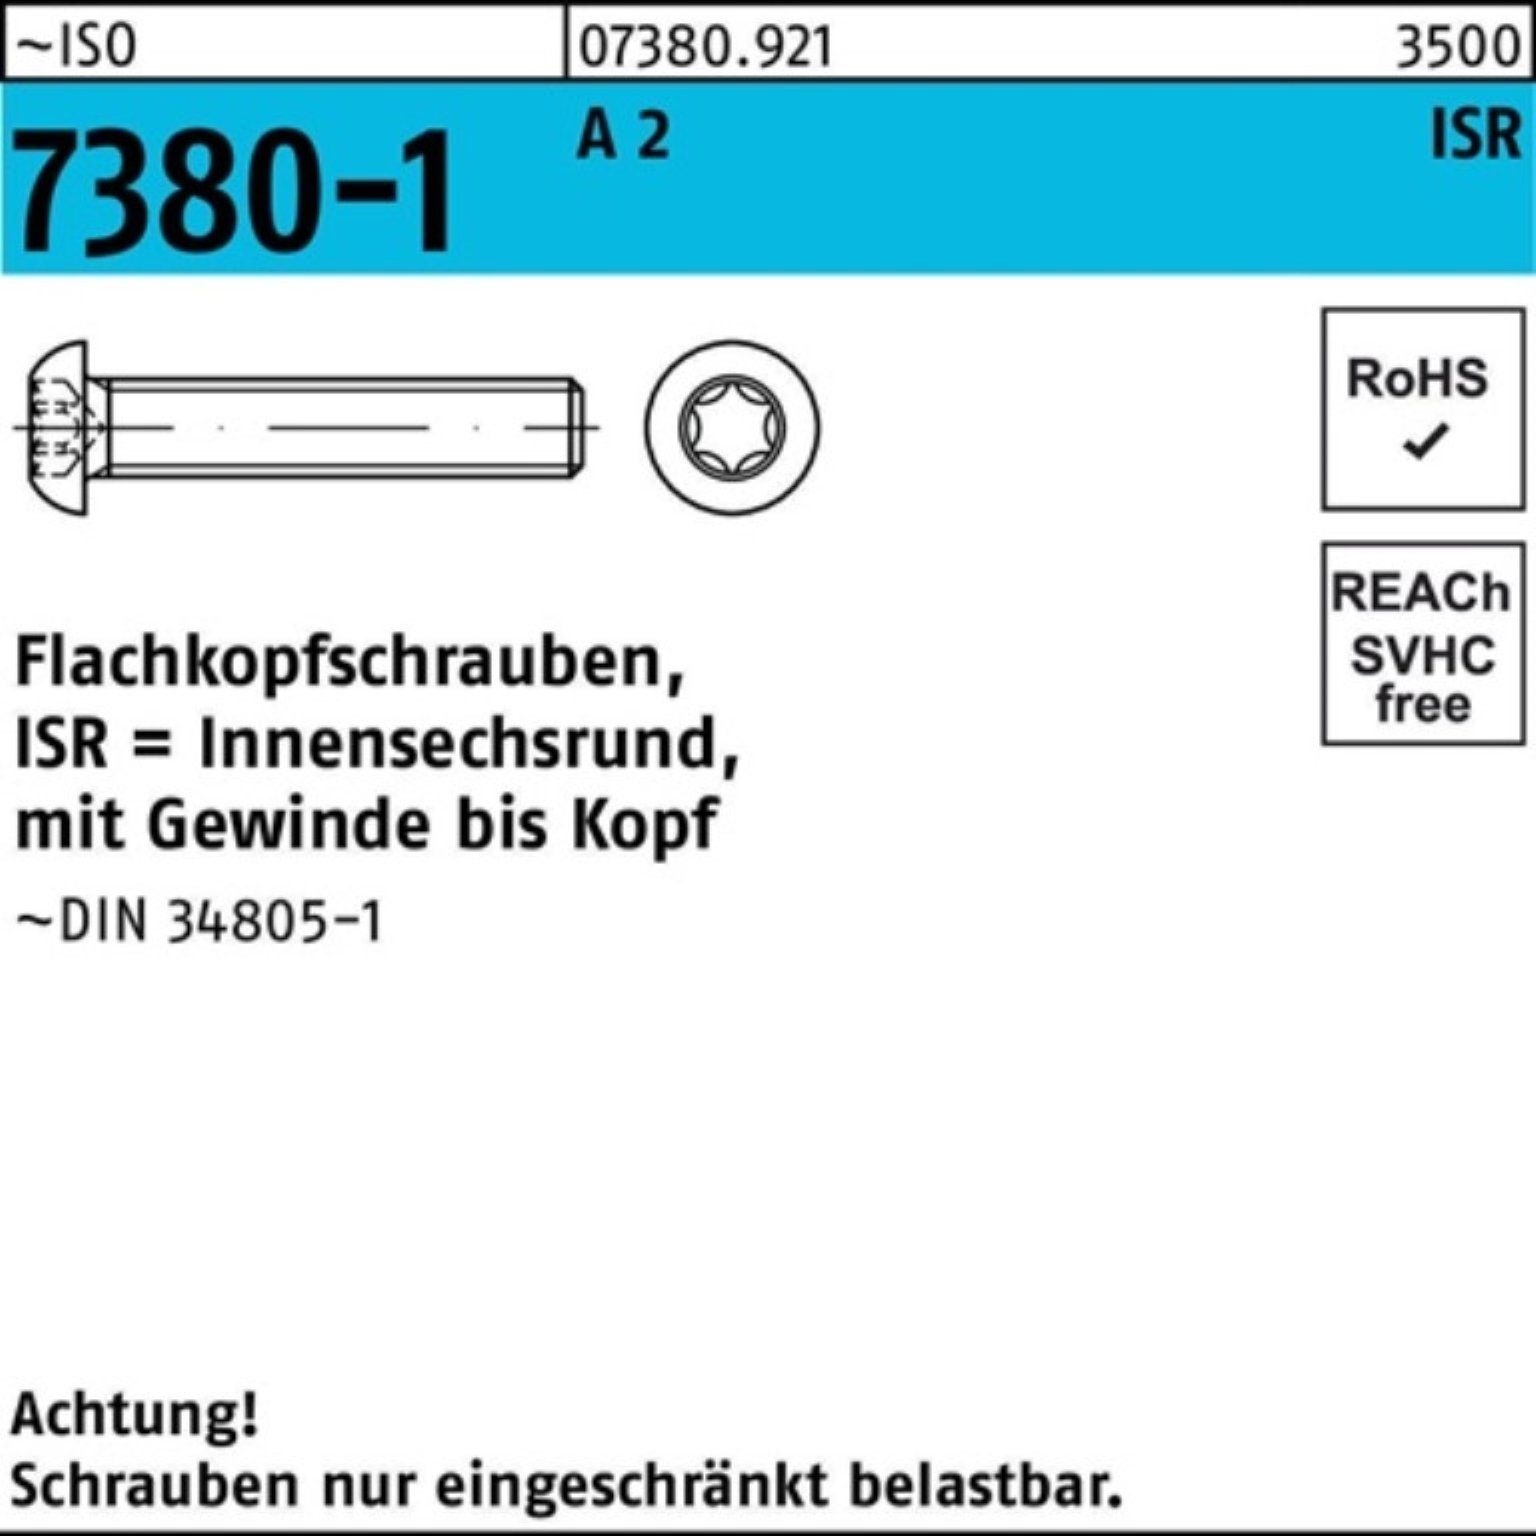 10-T40 Stü 2 A Reyher Flachkopfschraube 7380-1 Pack ISO 200er ISR M8x VG 200 Schraube